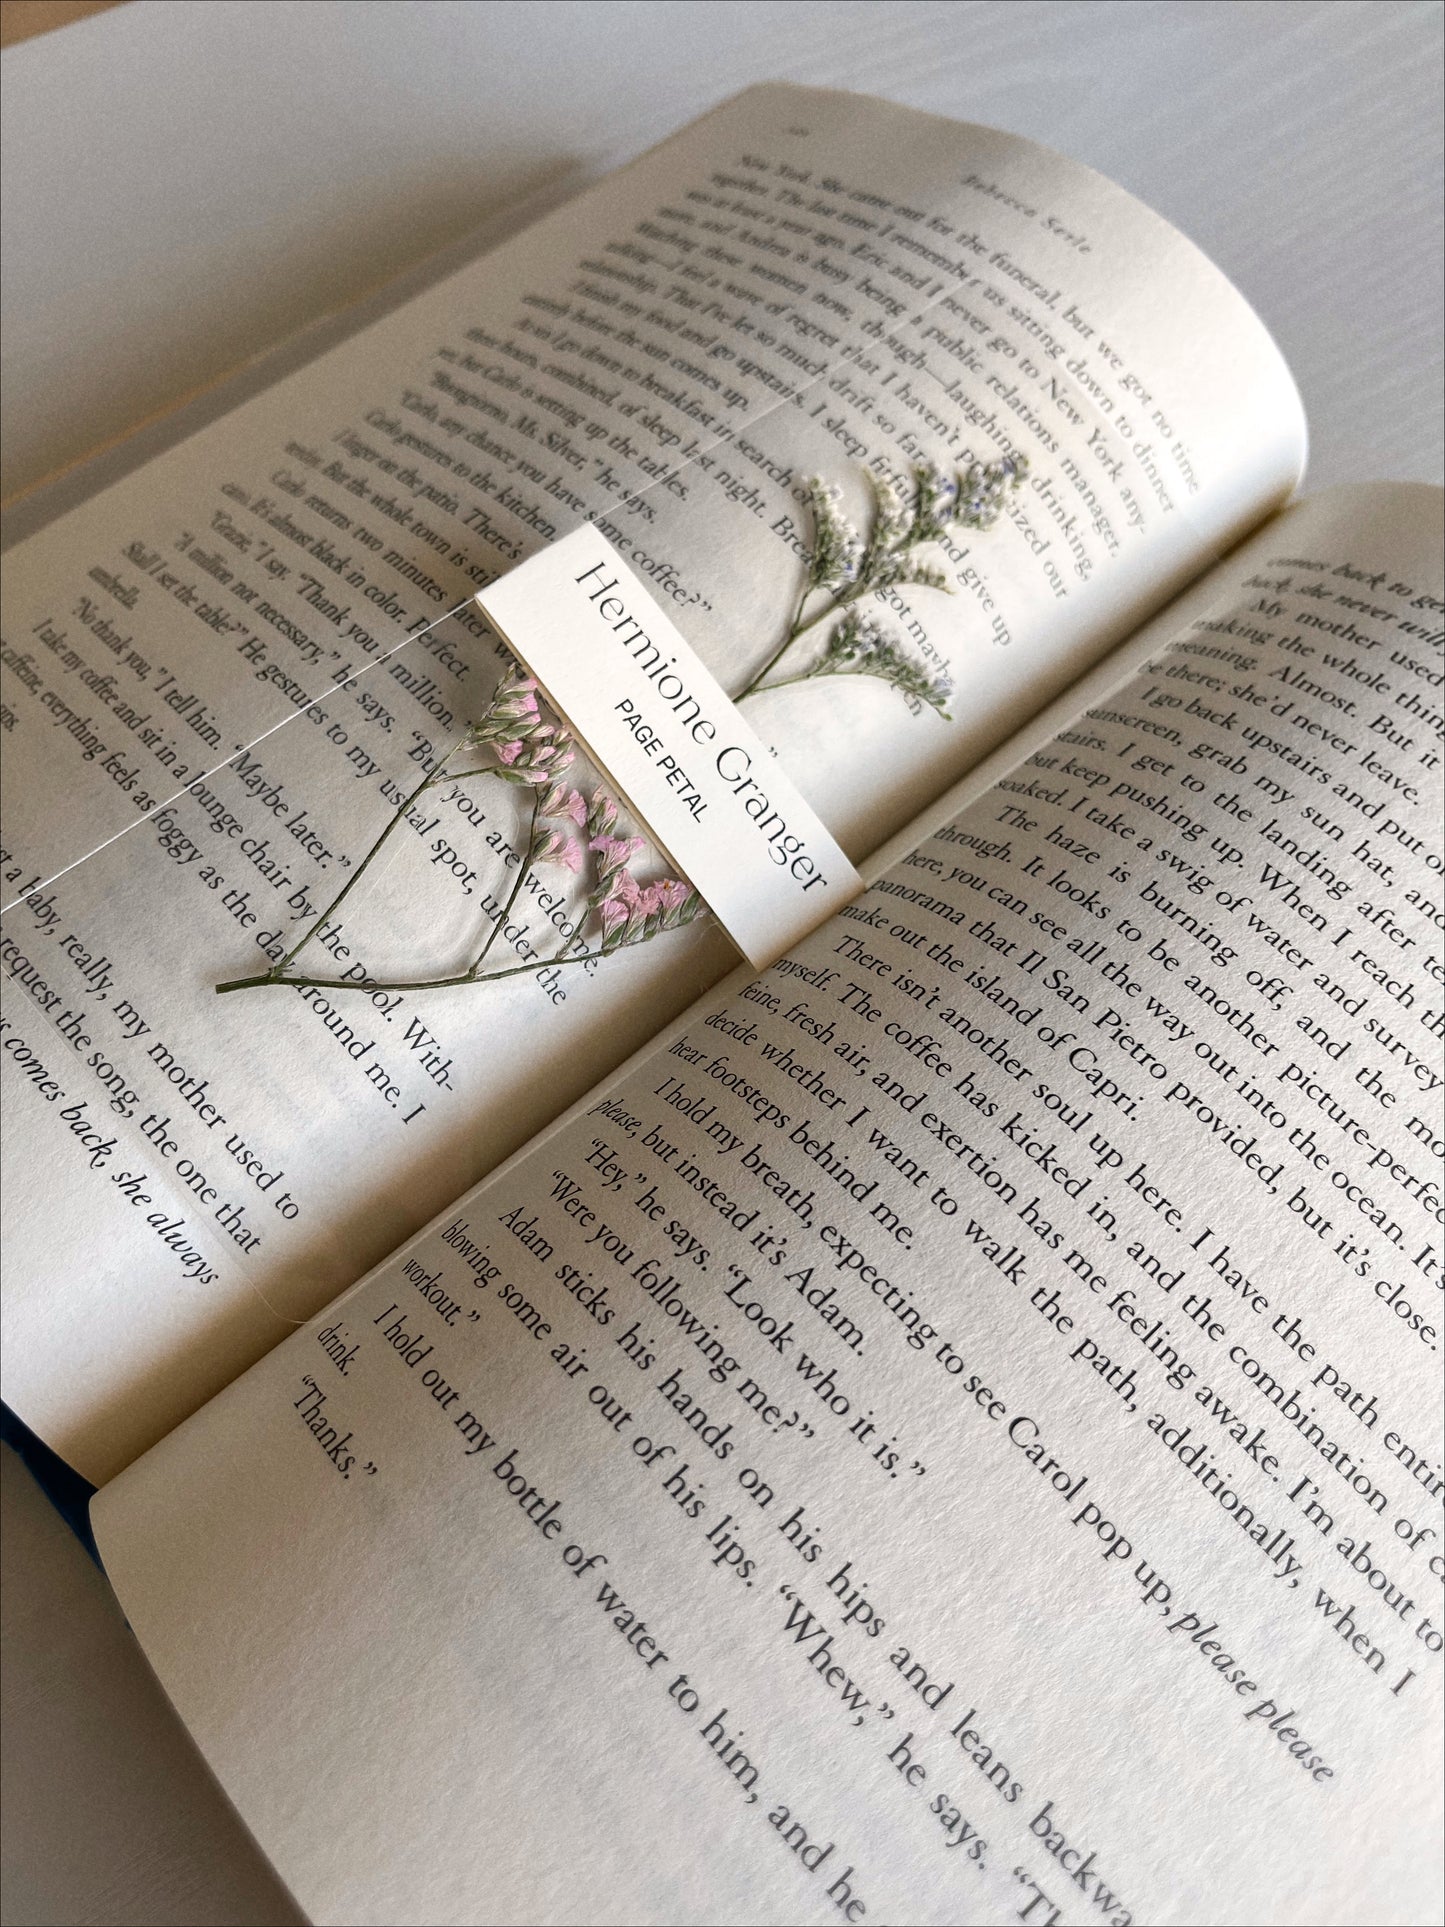 Hermione Granger Bookmark